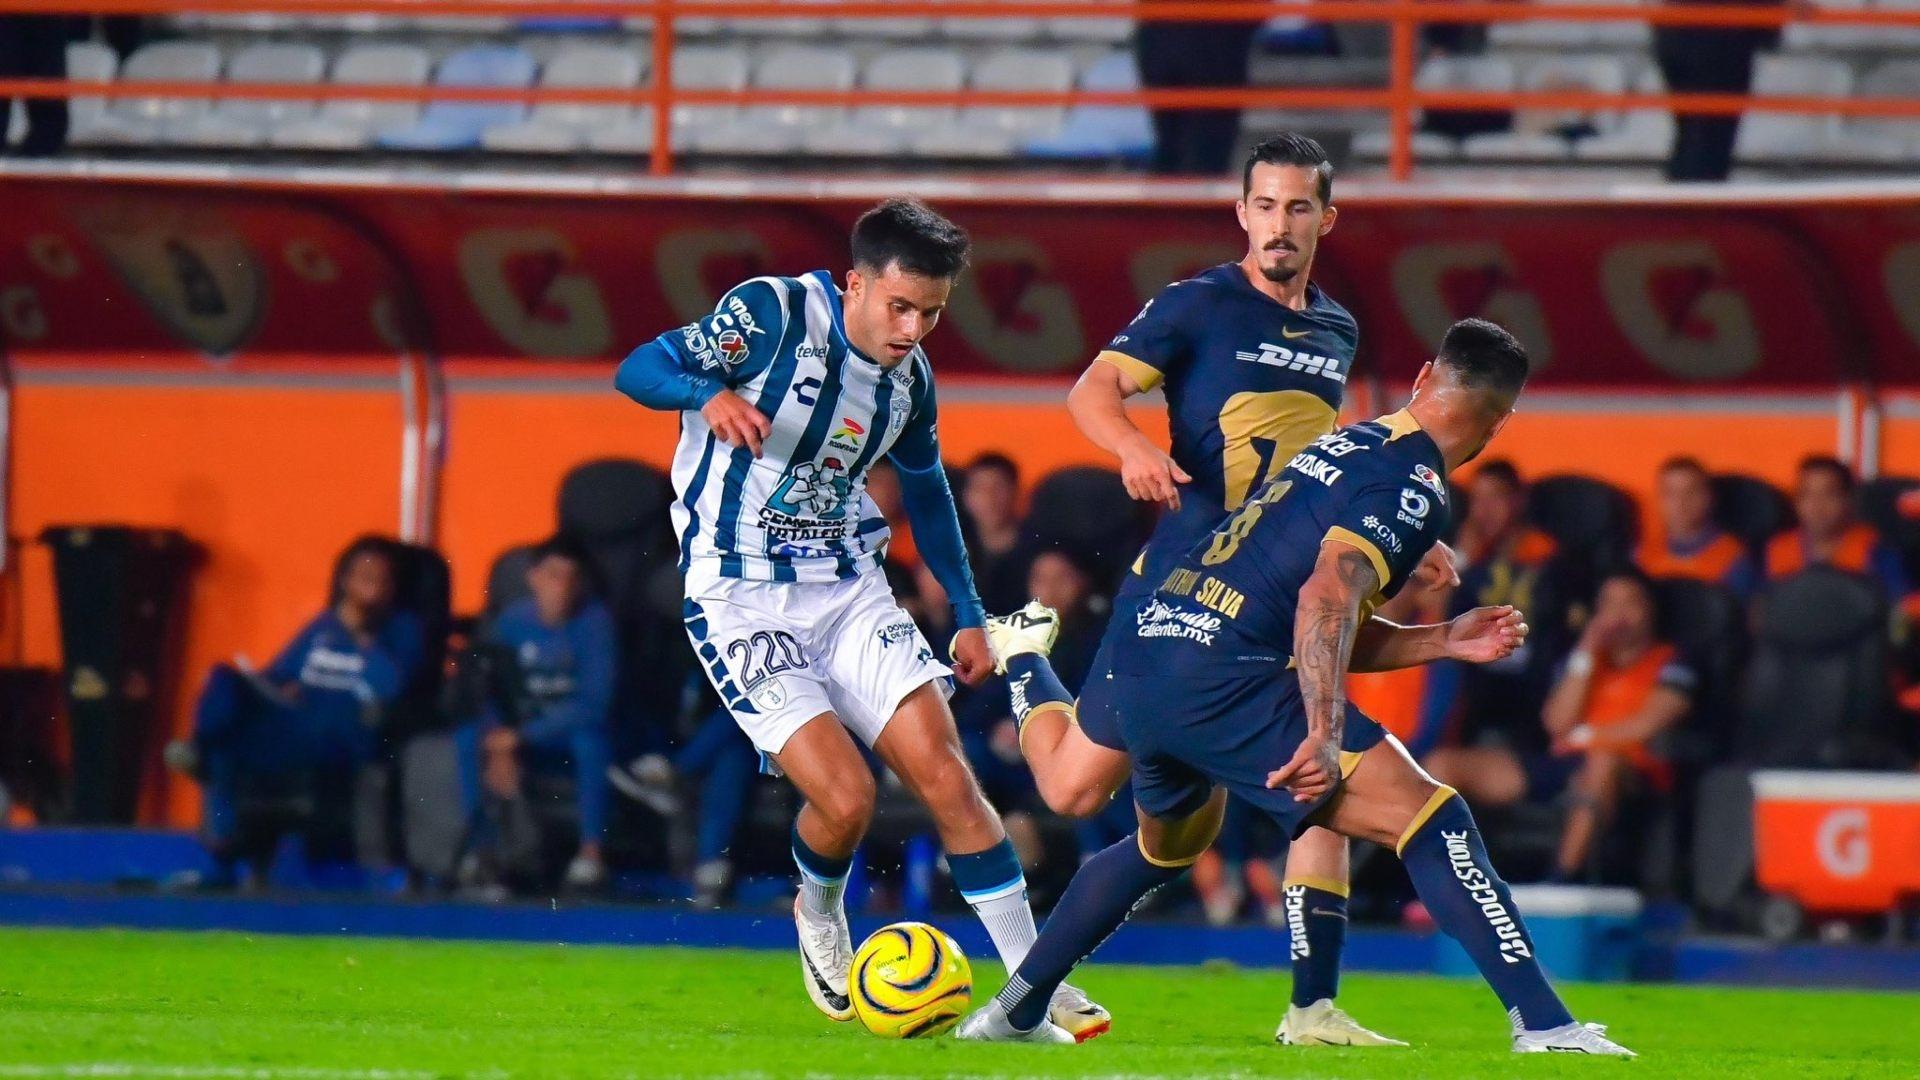 Pumas Vence a Pachuca y Clasifica a la Liguilla para Jugar contra Cruz Azul